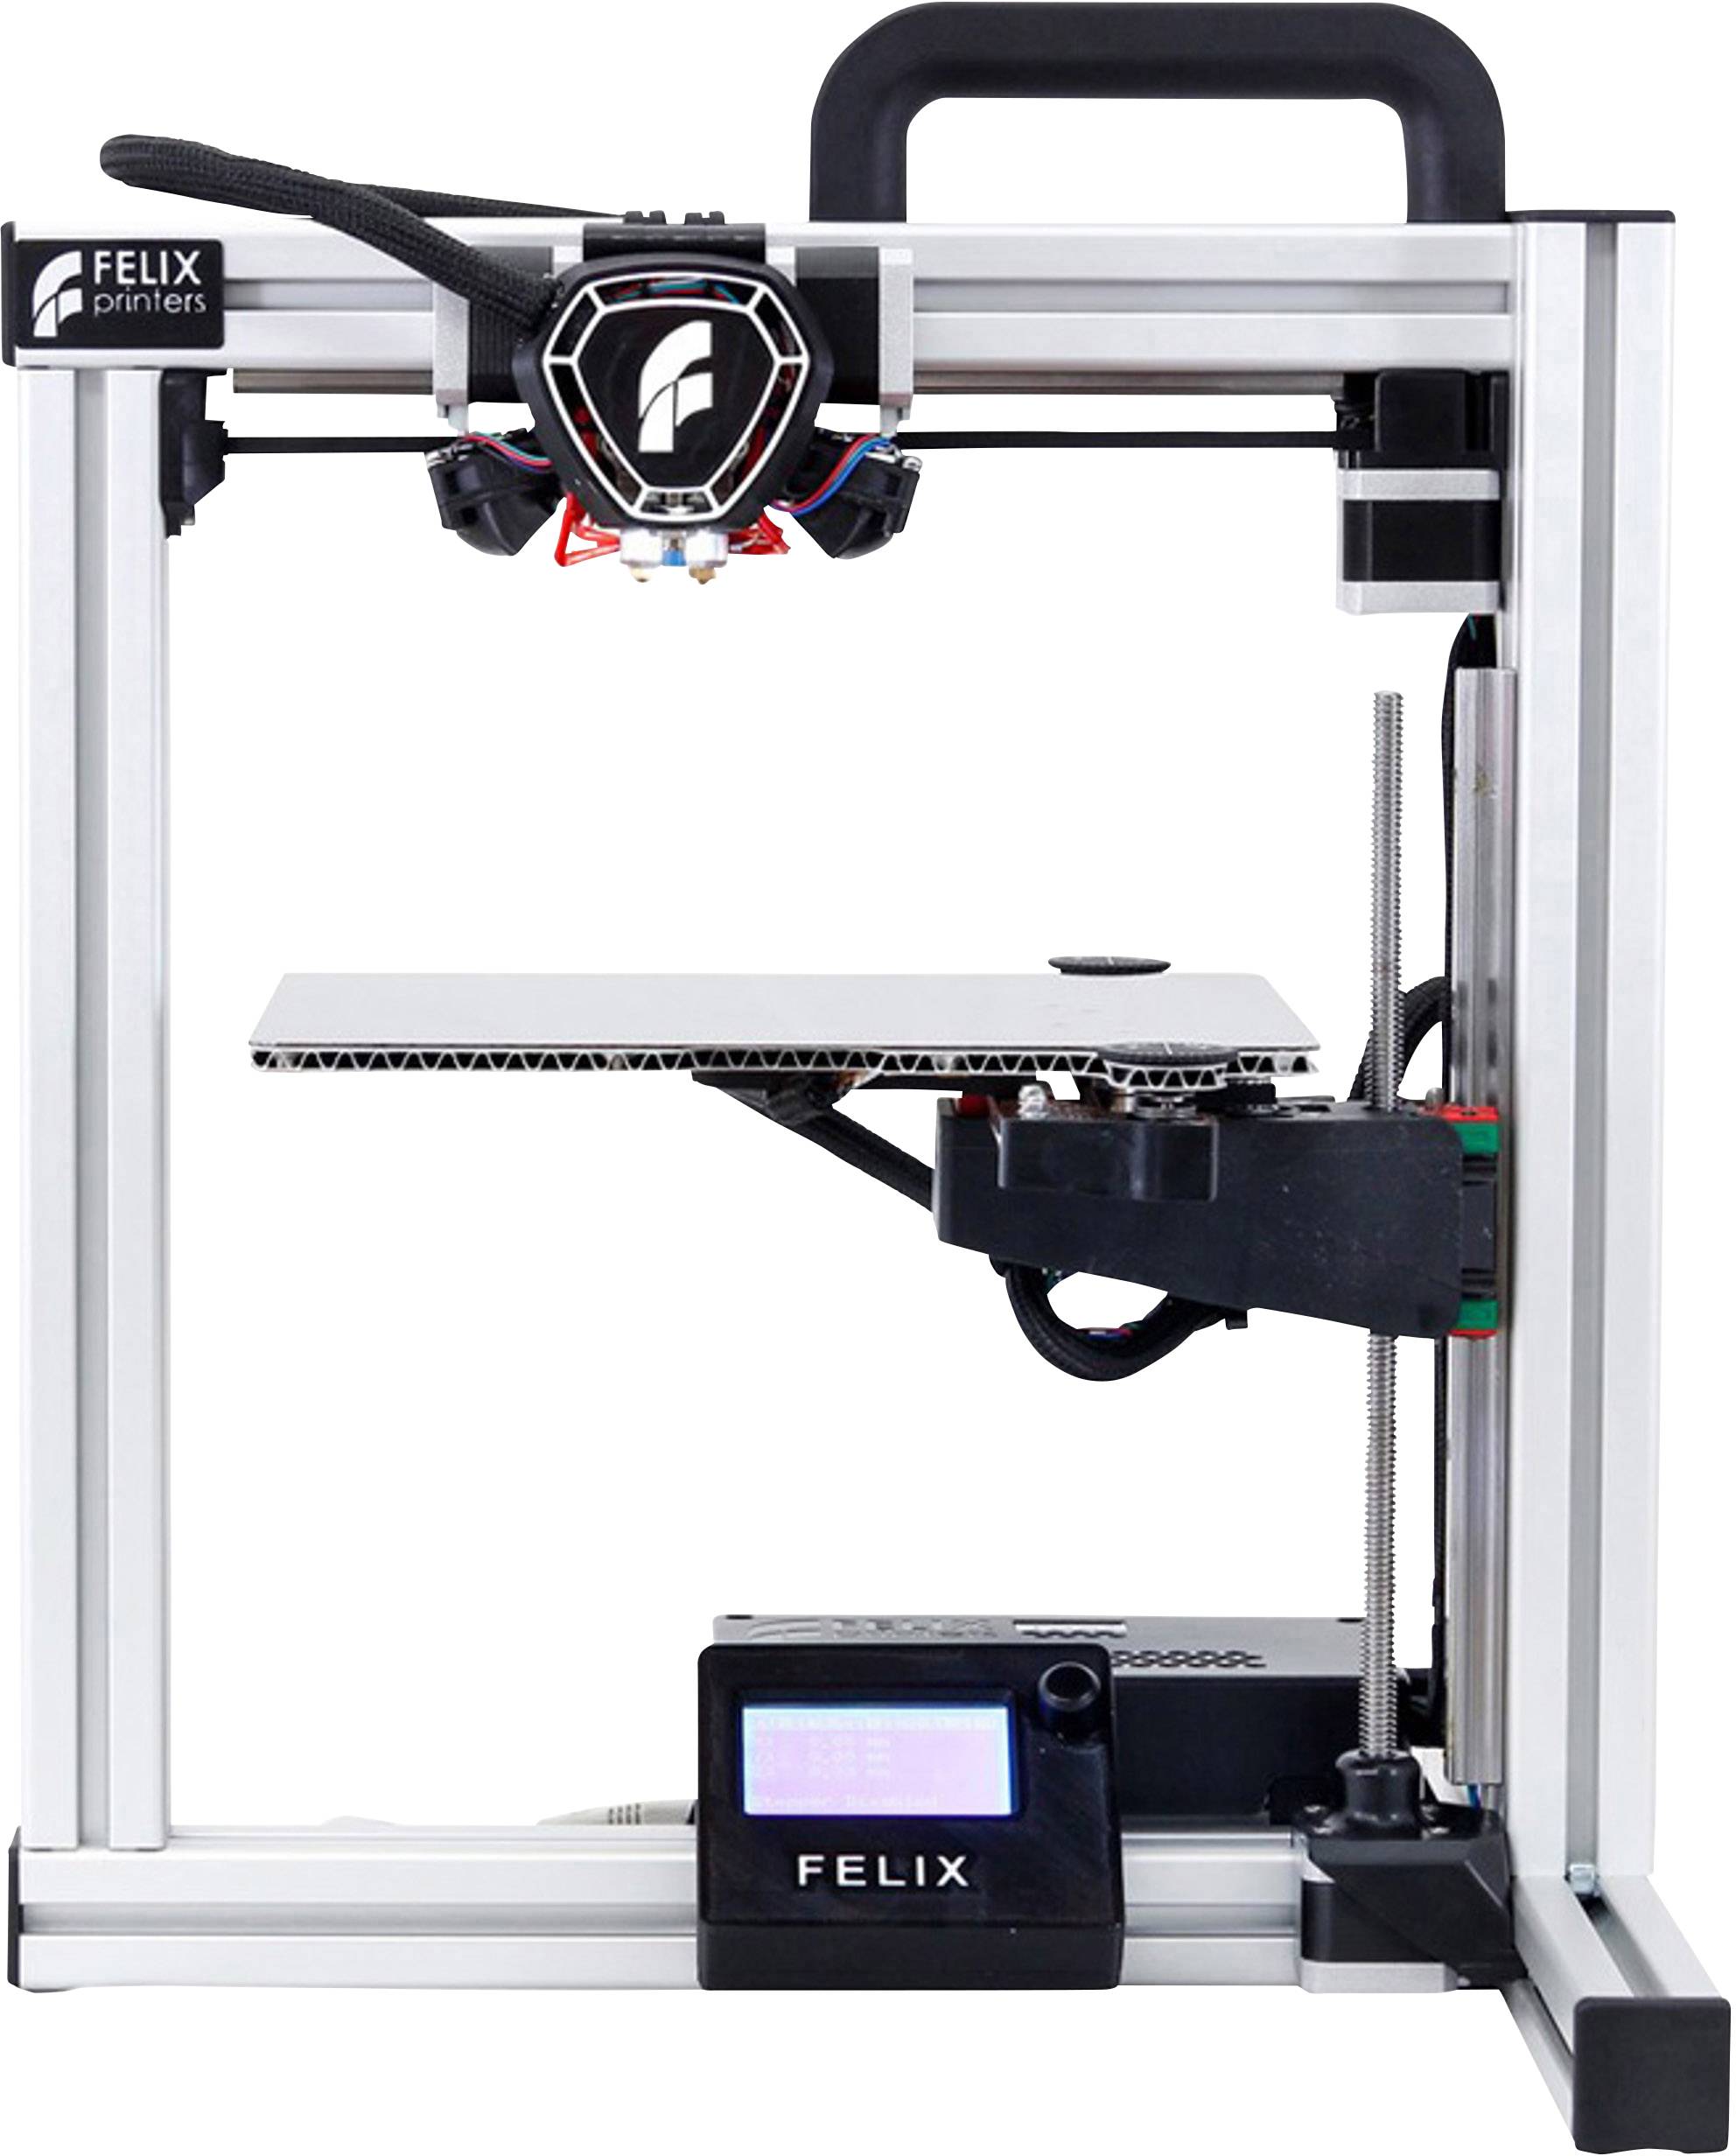 Ellers hjørne Børns dag FELIX Printers Tec 4.1 - DIY Kit Single Extruder 3D printer assembly kit |  Conrad.com